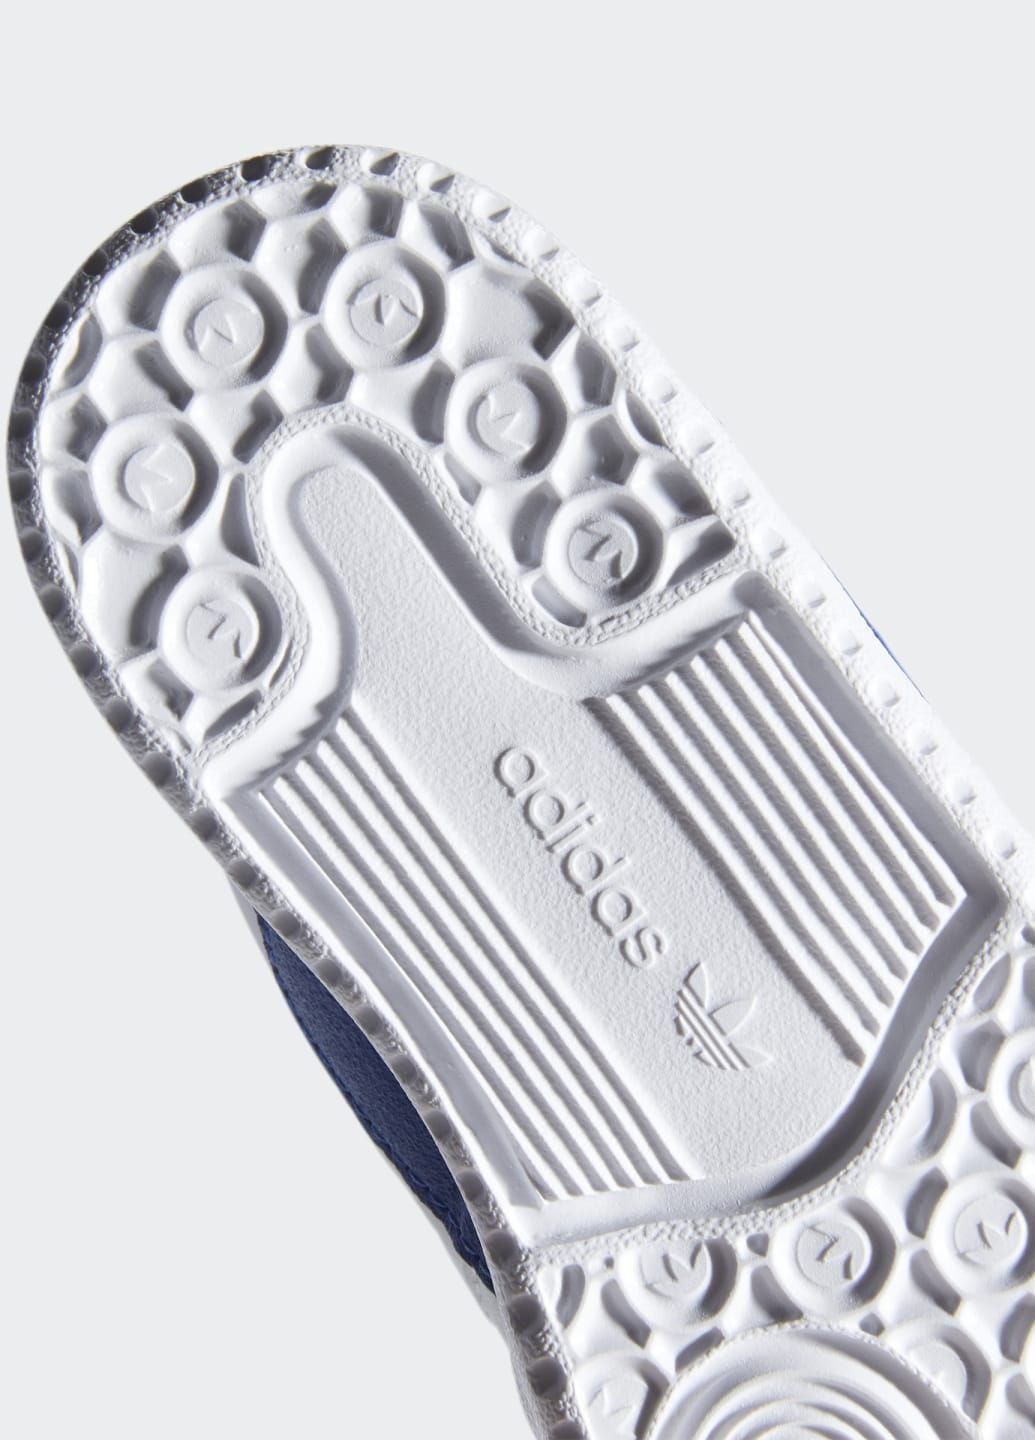 Белые всесезонные кроссовки forum low adidas